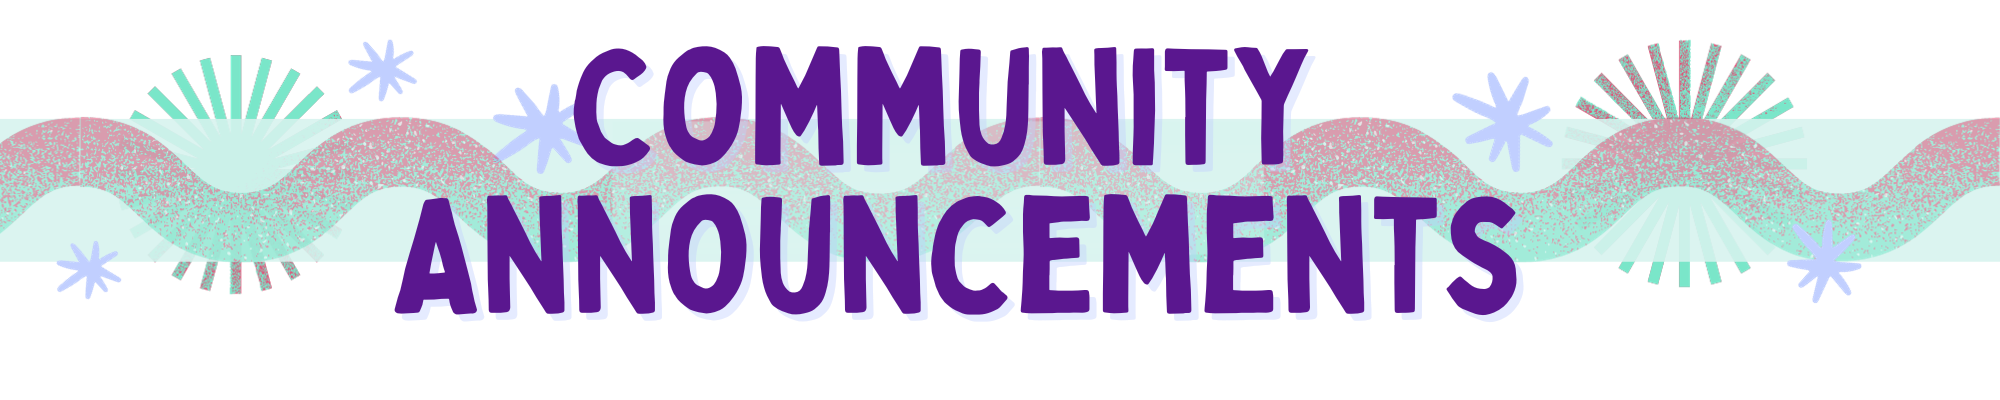 Community Announcements 